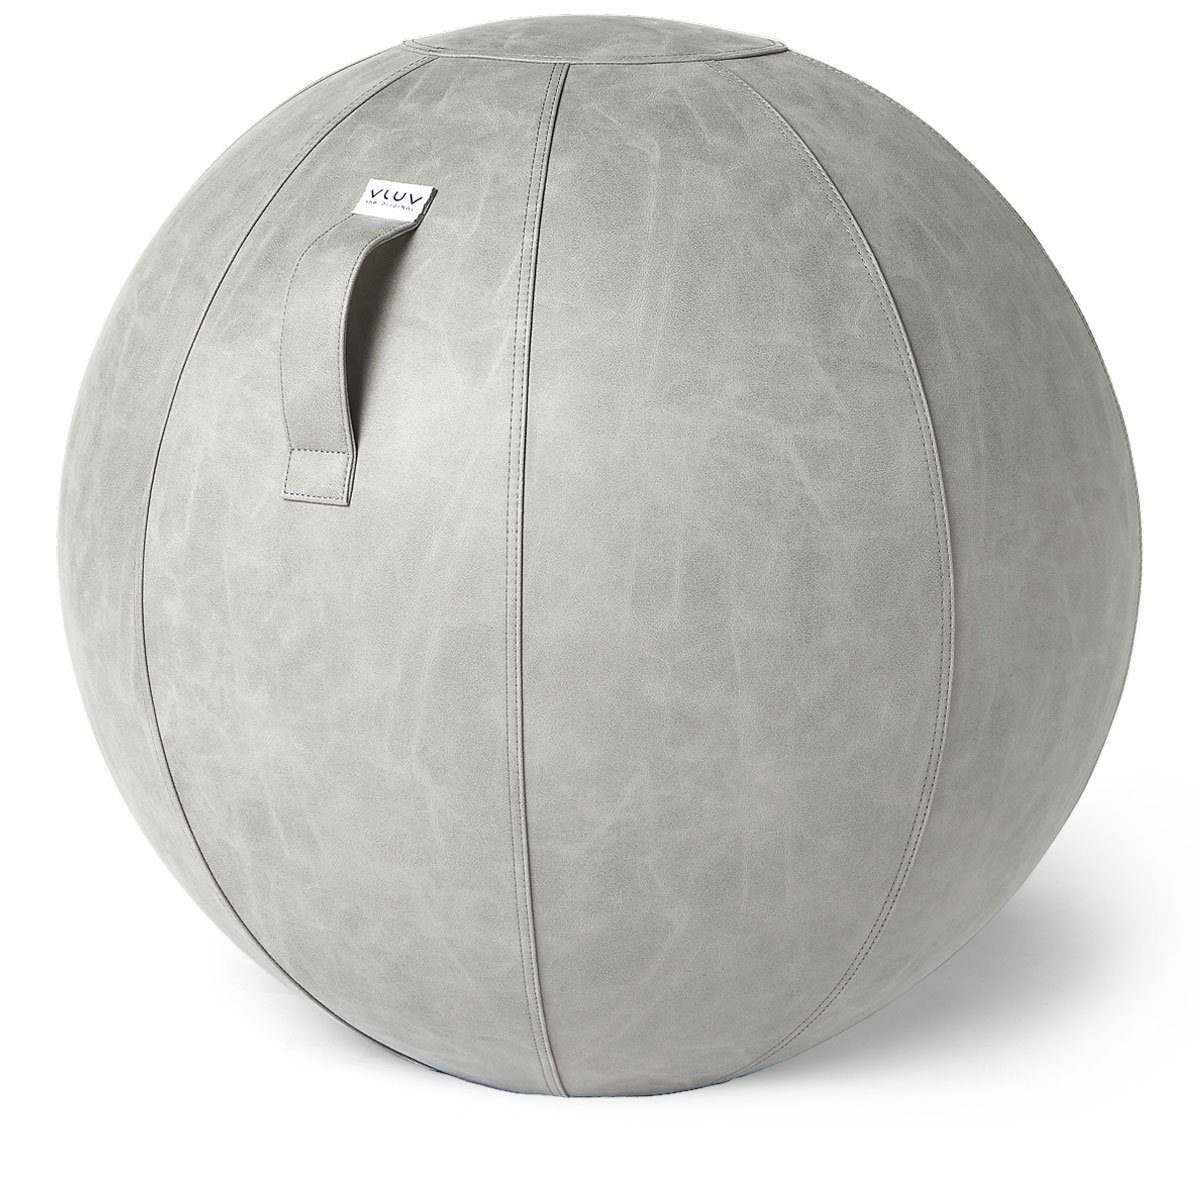 VLUV Sitzball VLUV BOL Vega Sitzball, ergonomisches Sitzmöbel für Büro und Zuhause, Farbe: Cement (Grau), Ø 60cm - 65cm, Bezug aus veganem Kunstleder, robust und formstabil, mit Tragegriff | Sportbälle